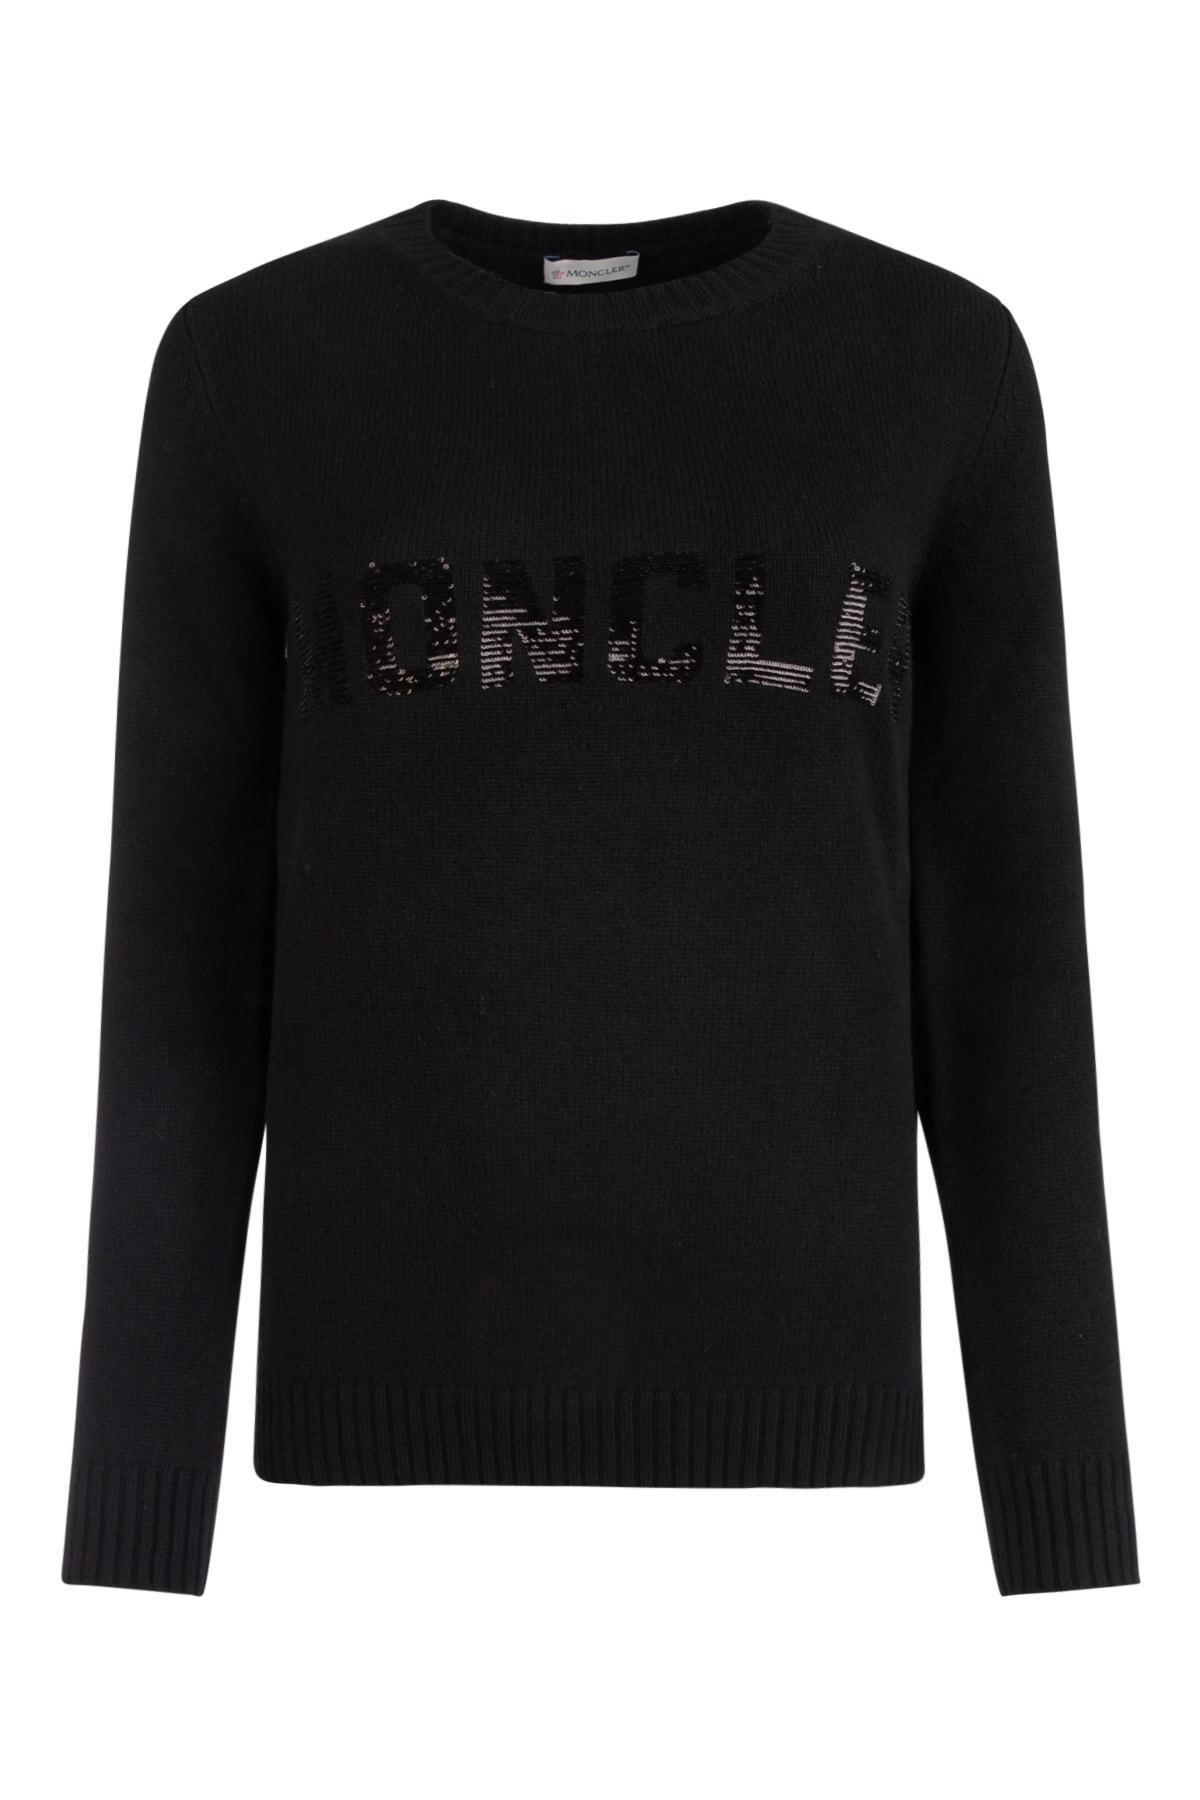 Moncler Wool Logo Sequinned Crewneck Sweatshirt in Black - Lyst